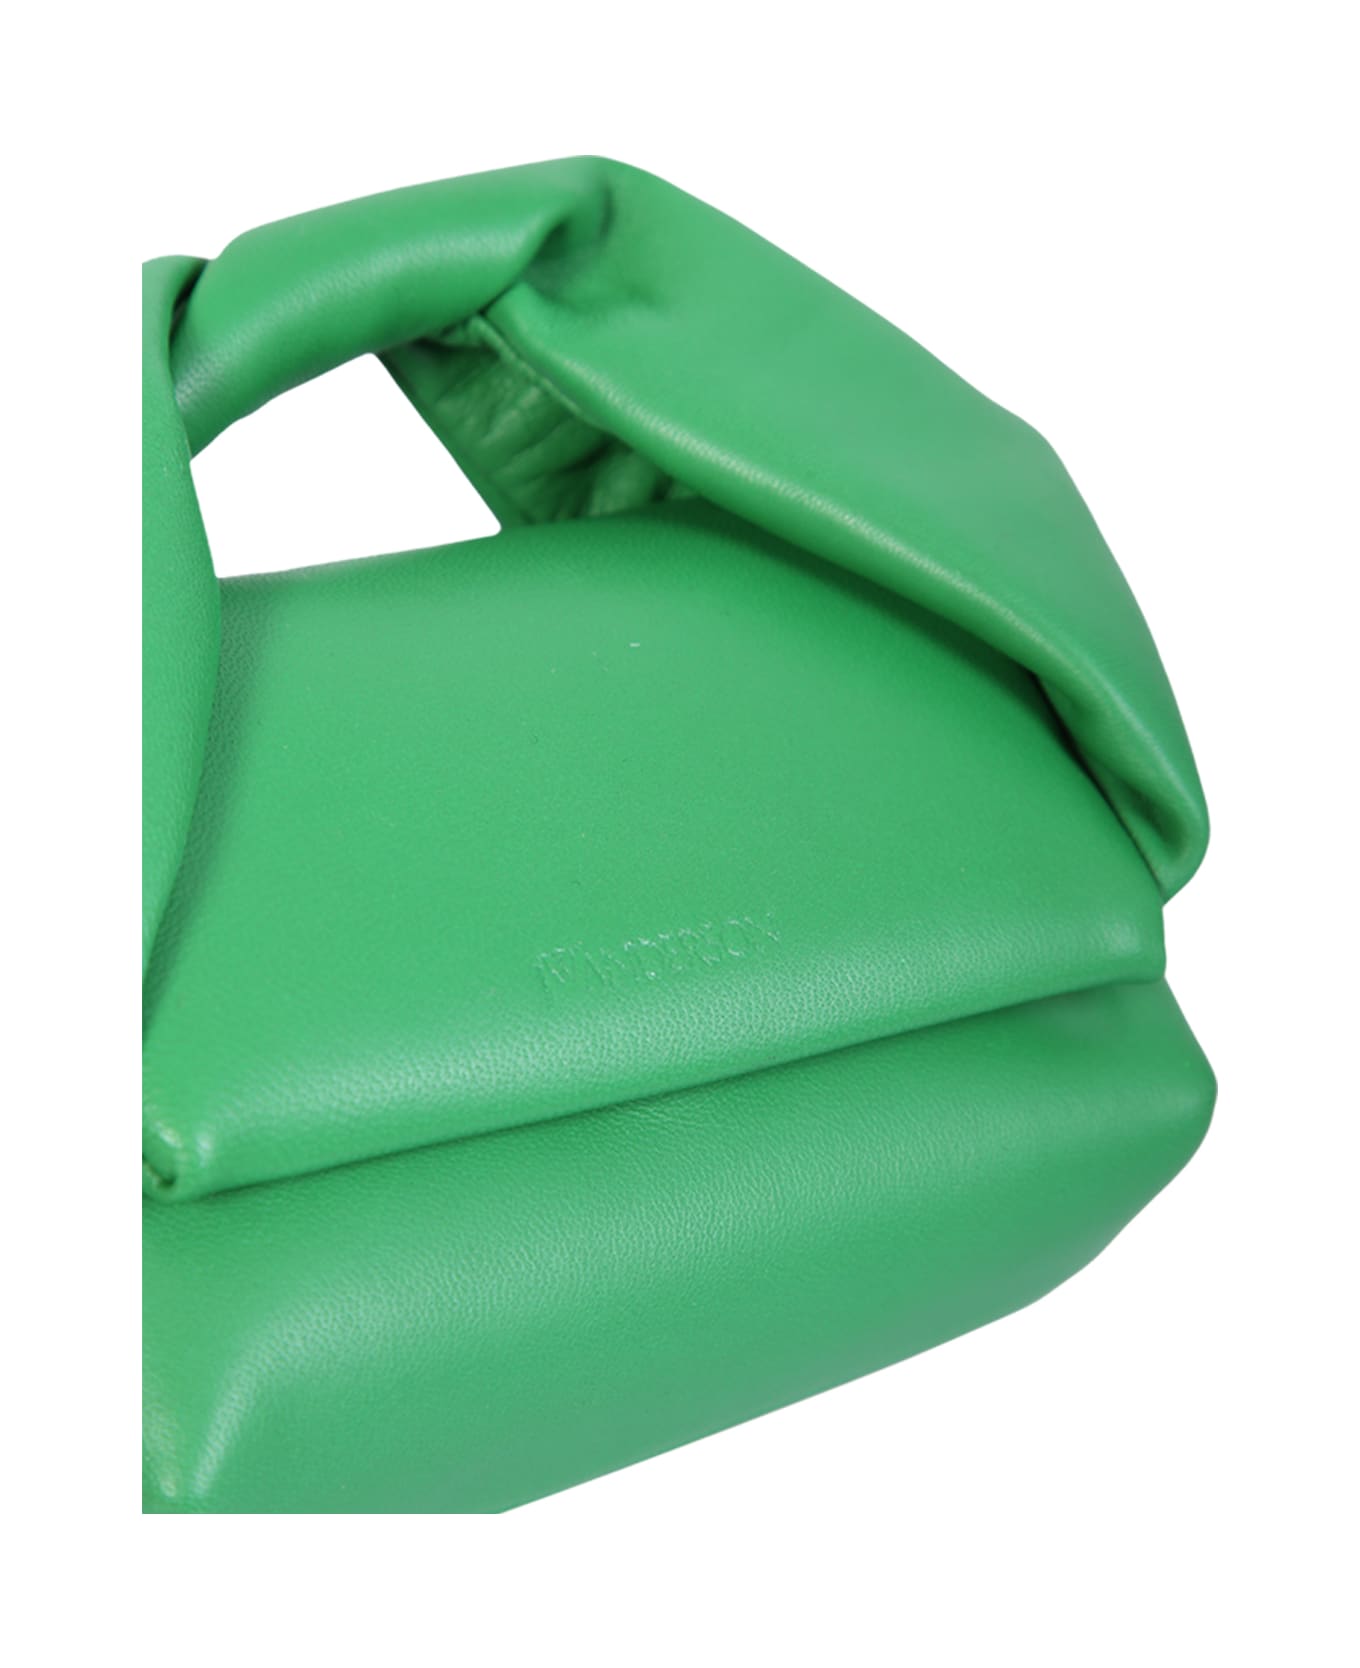 J.W. Anderson Mini Twister Green Bag - Green